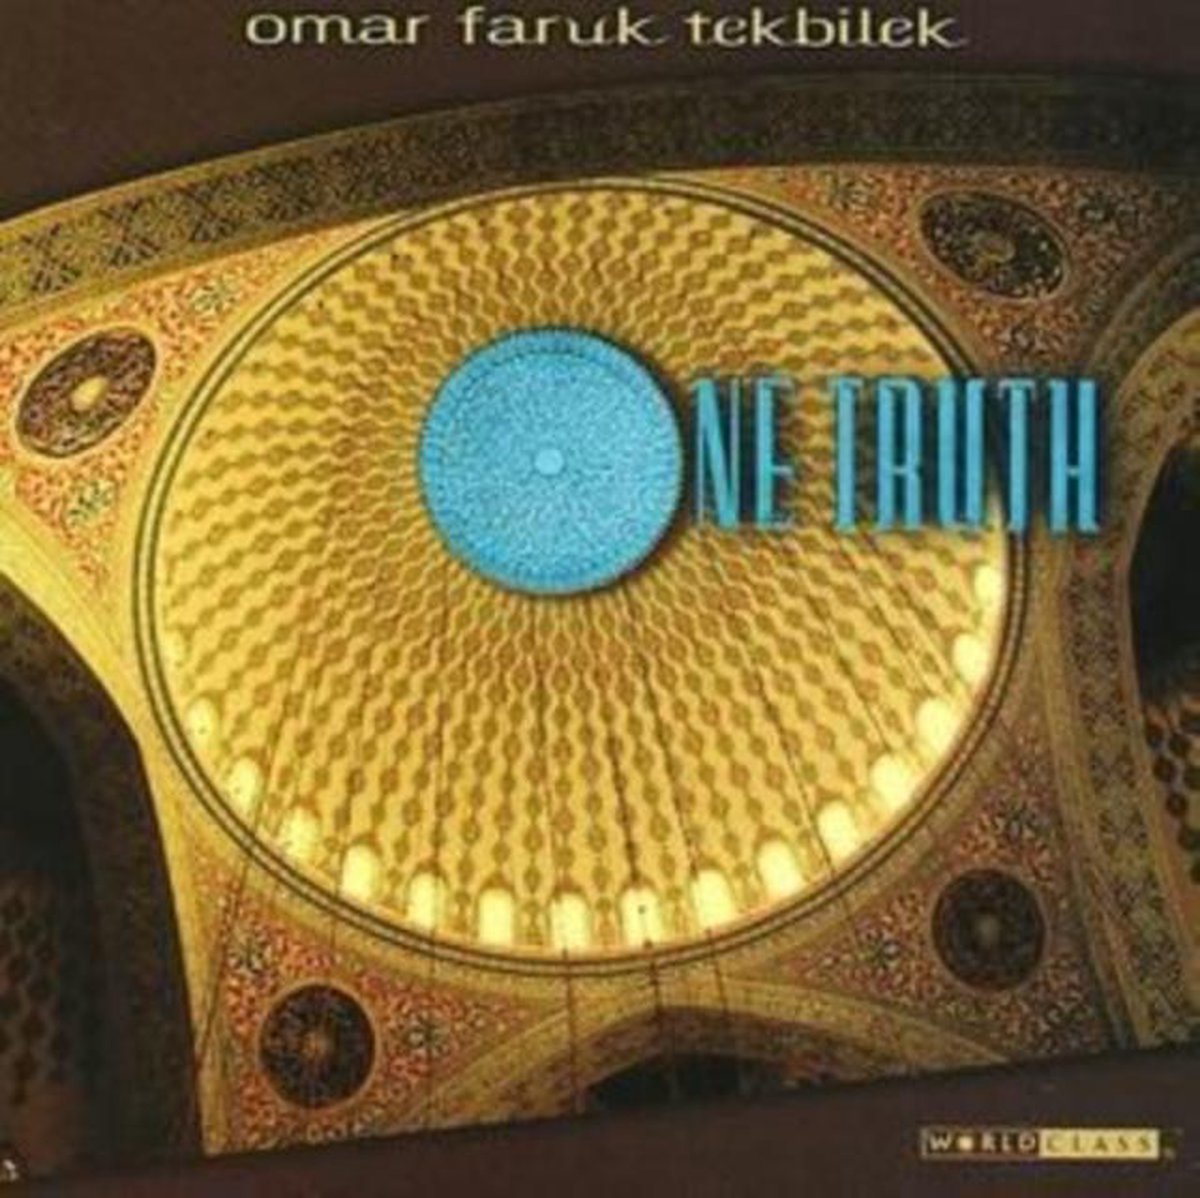 One Truth - Omar Faruk Tekbilek